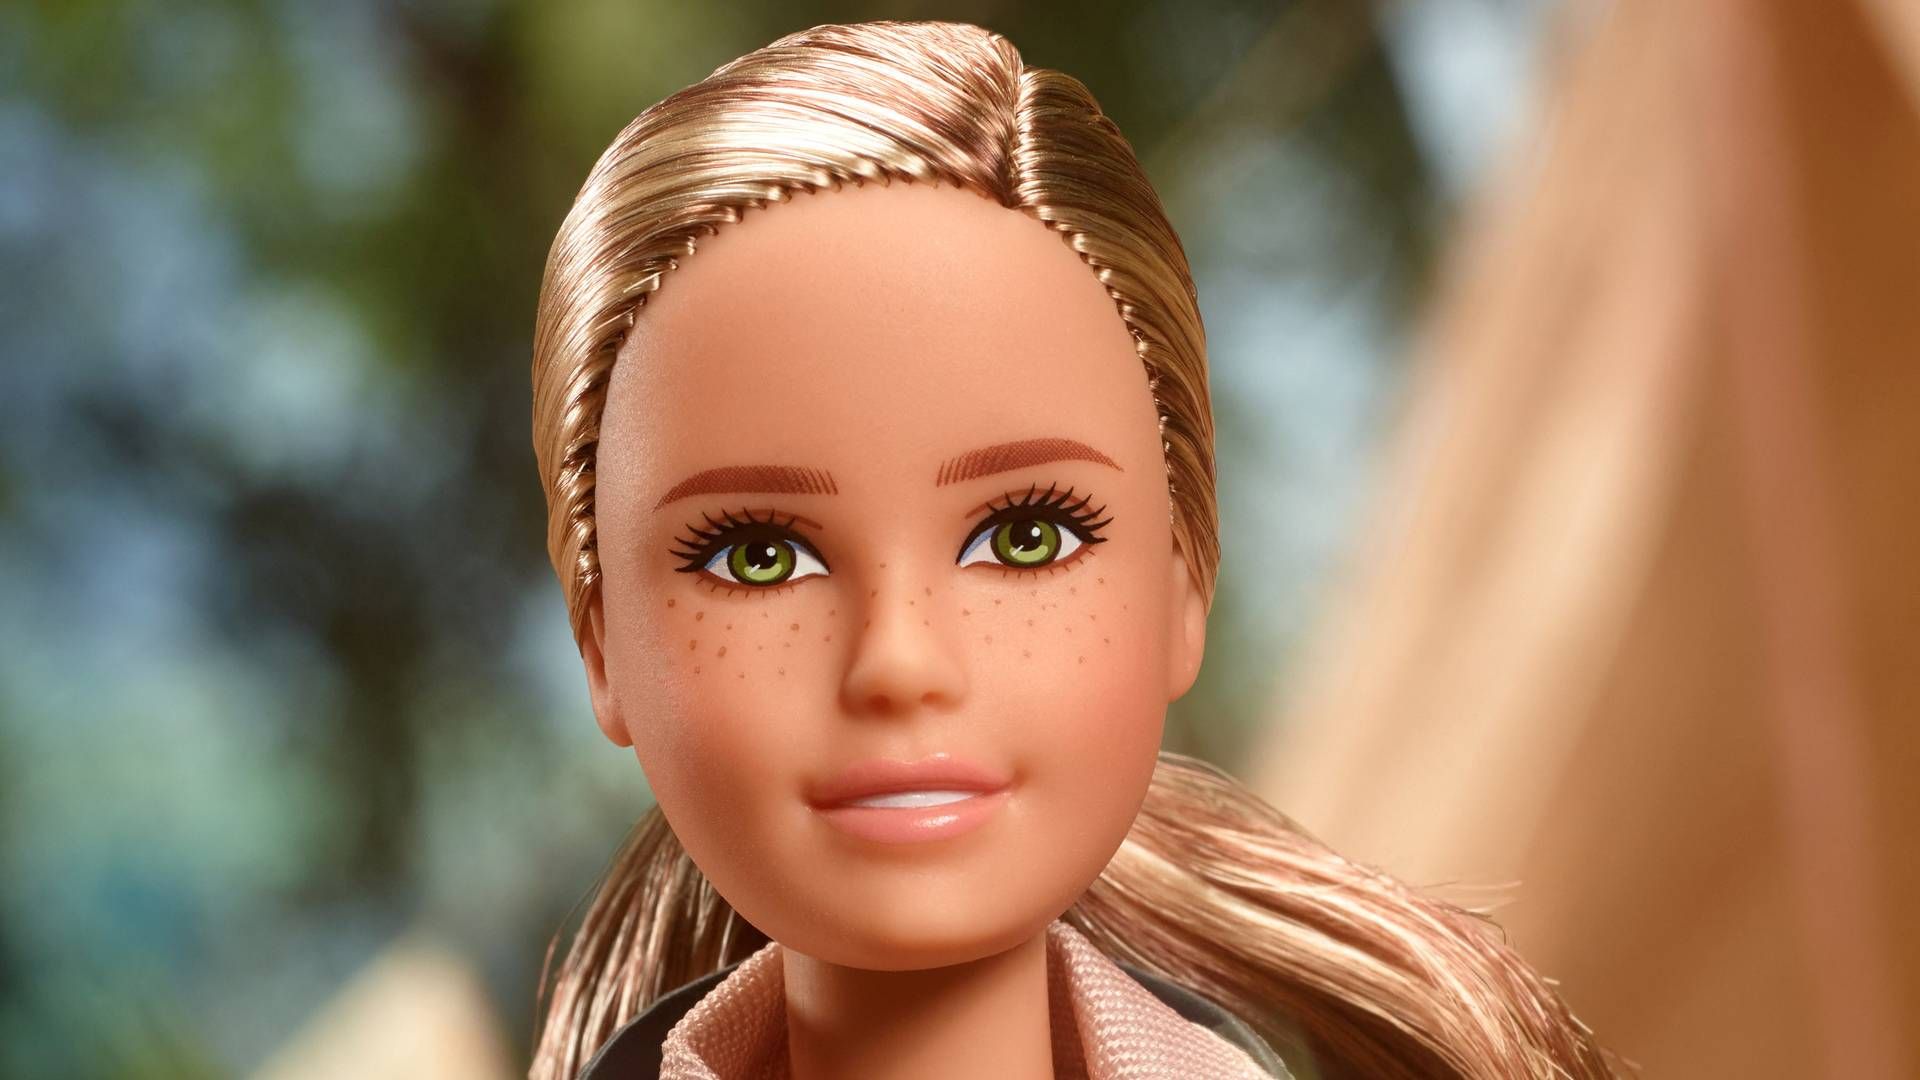 Maki forhandler bl.a. Barbie-dukker, her i skikkelse af primatologen Jane Goodall. | Foto: Jane Goodall Institute/VIA REUTERS / X80001